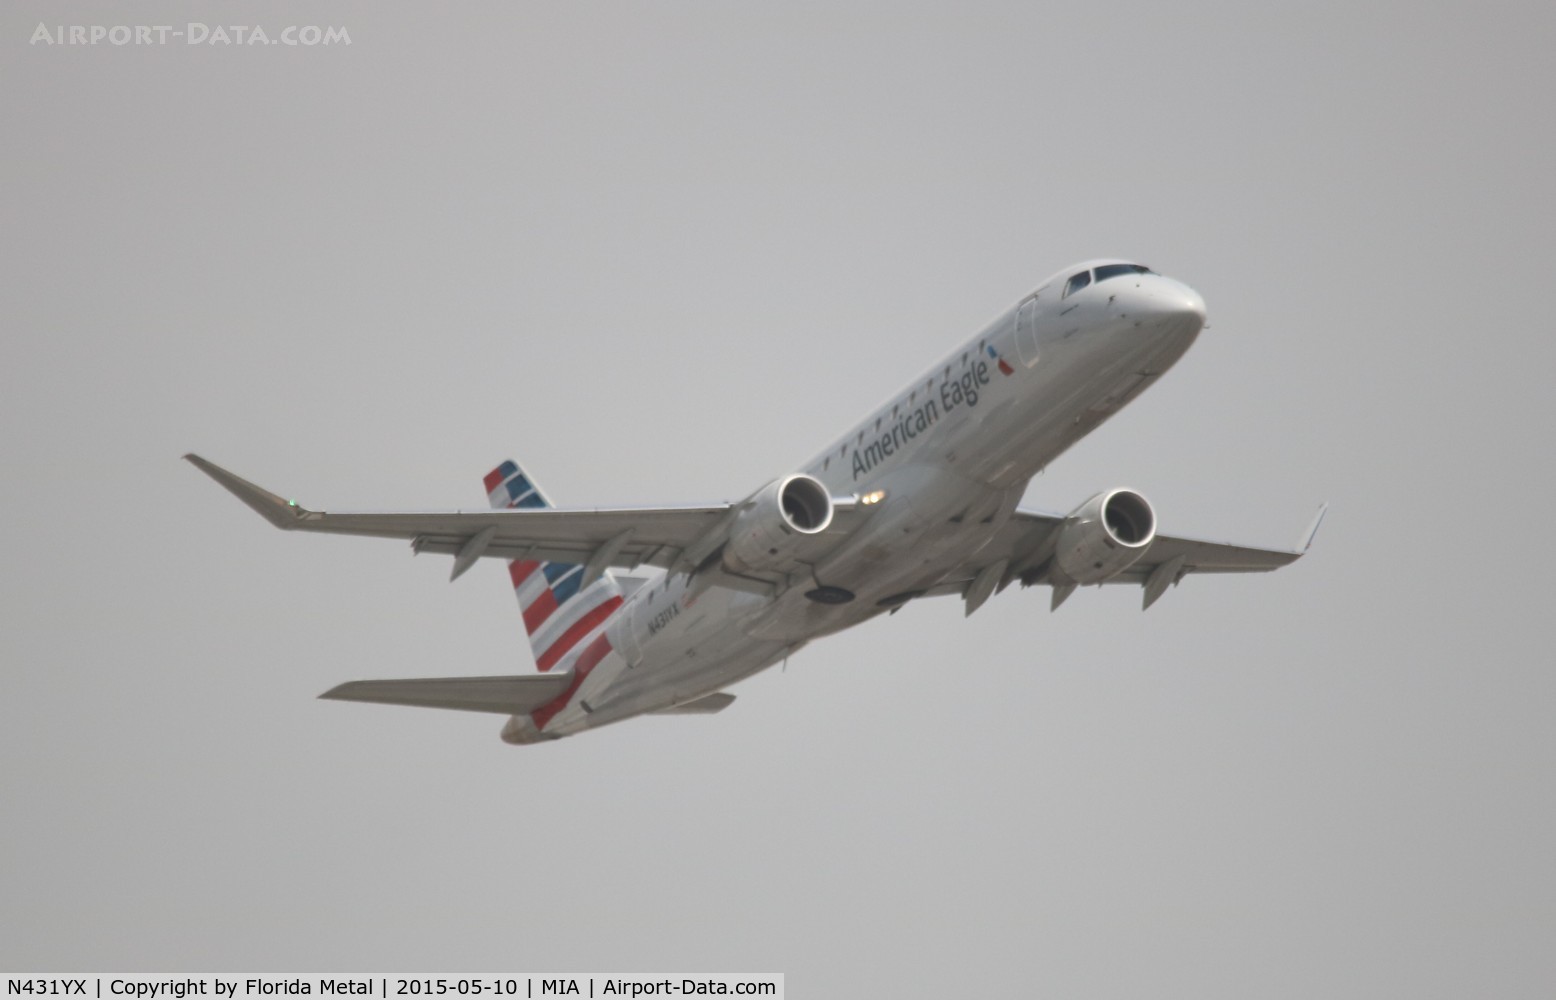 N431YX, 2014 Embraer 175LR (ERJ-170-200LR) C/N 17000413, American Eagle